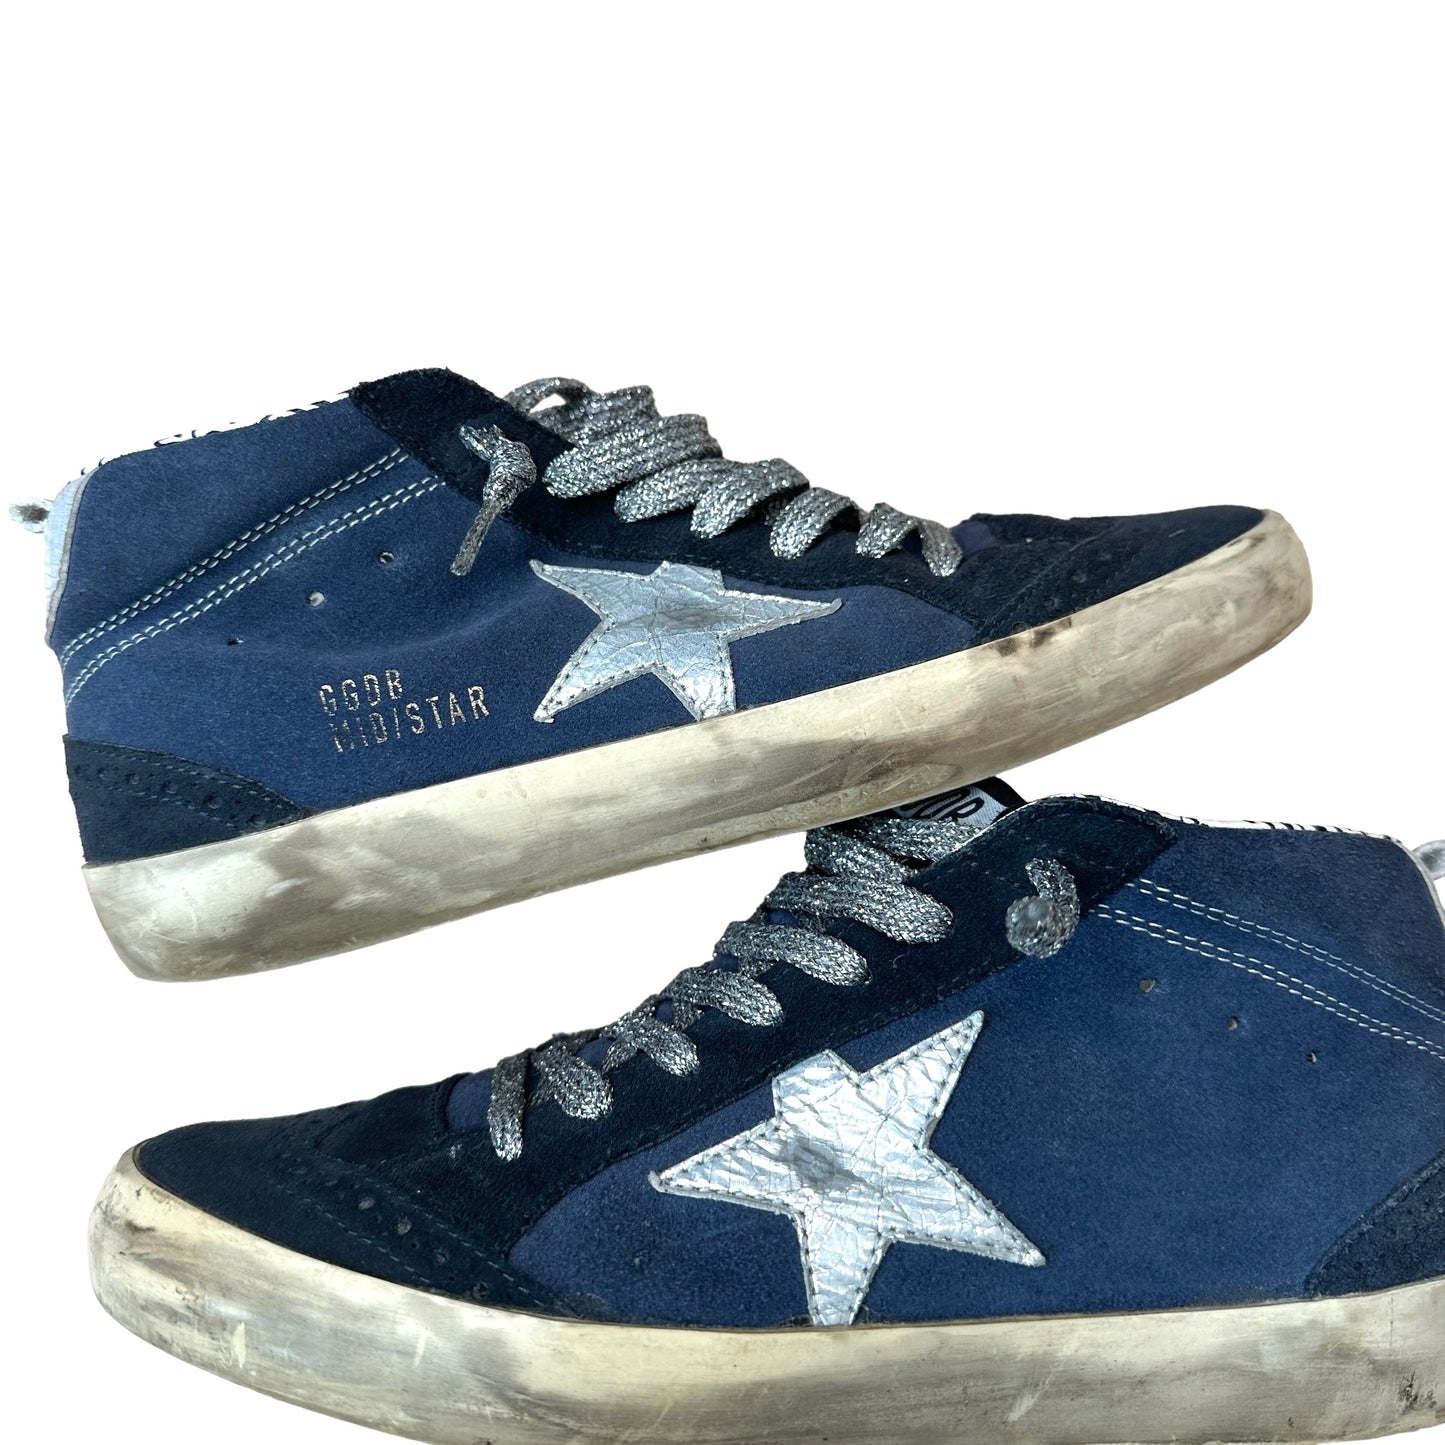 Blue Suede Sneakers - 8